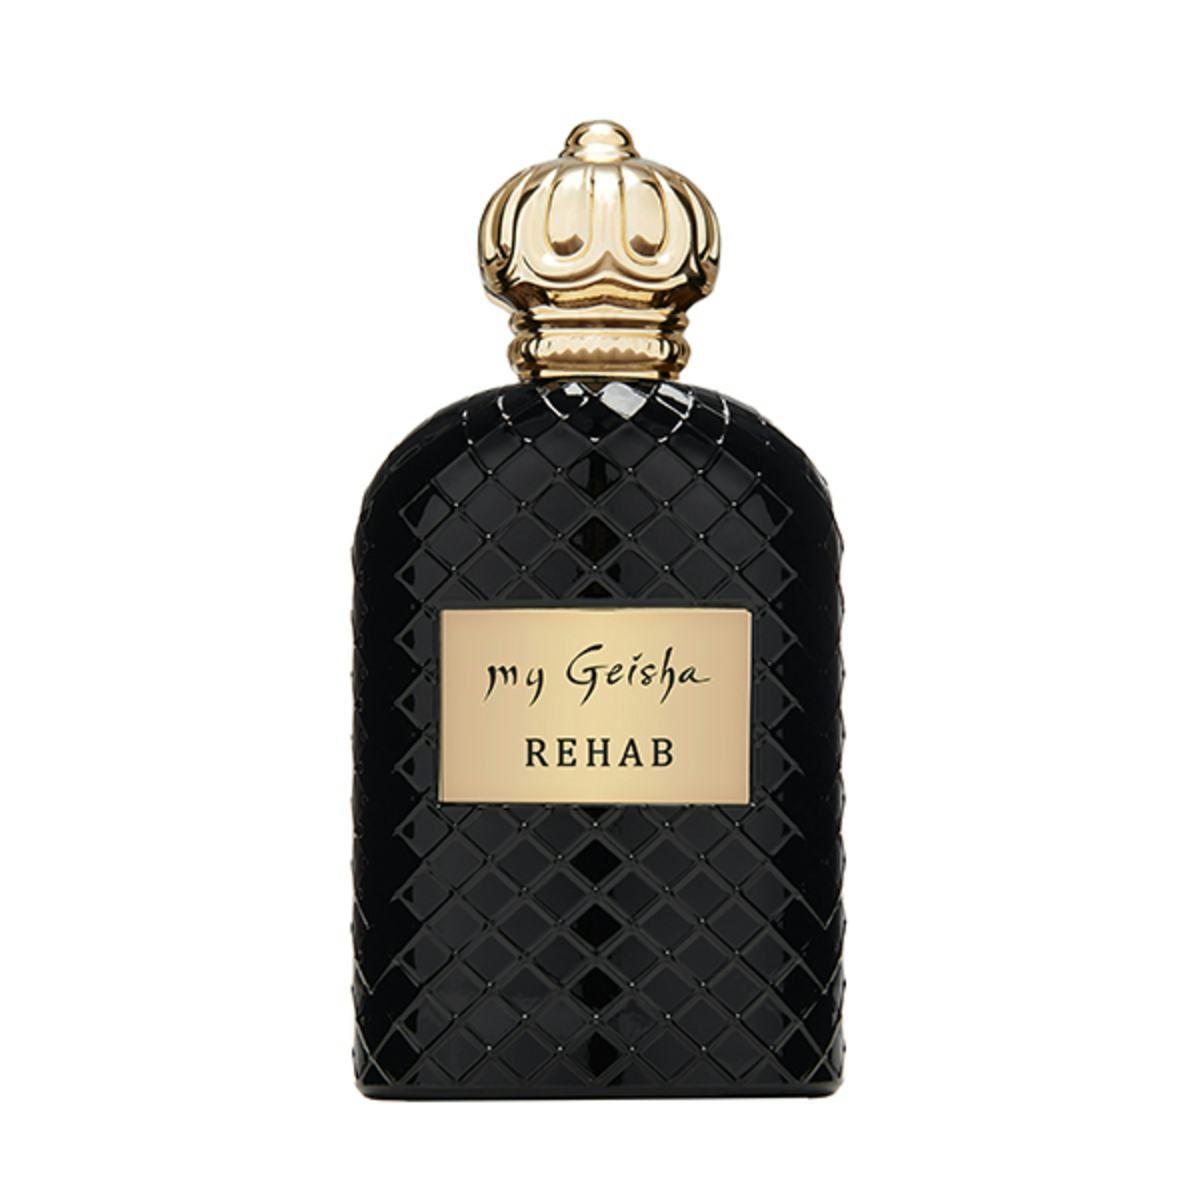 Extrait de parfum REHAB 100 ml, My Geisha Genève, Genève, image 1 | Mimelis